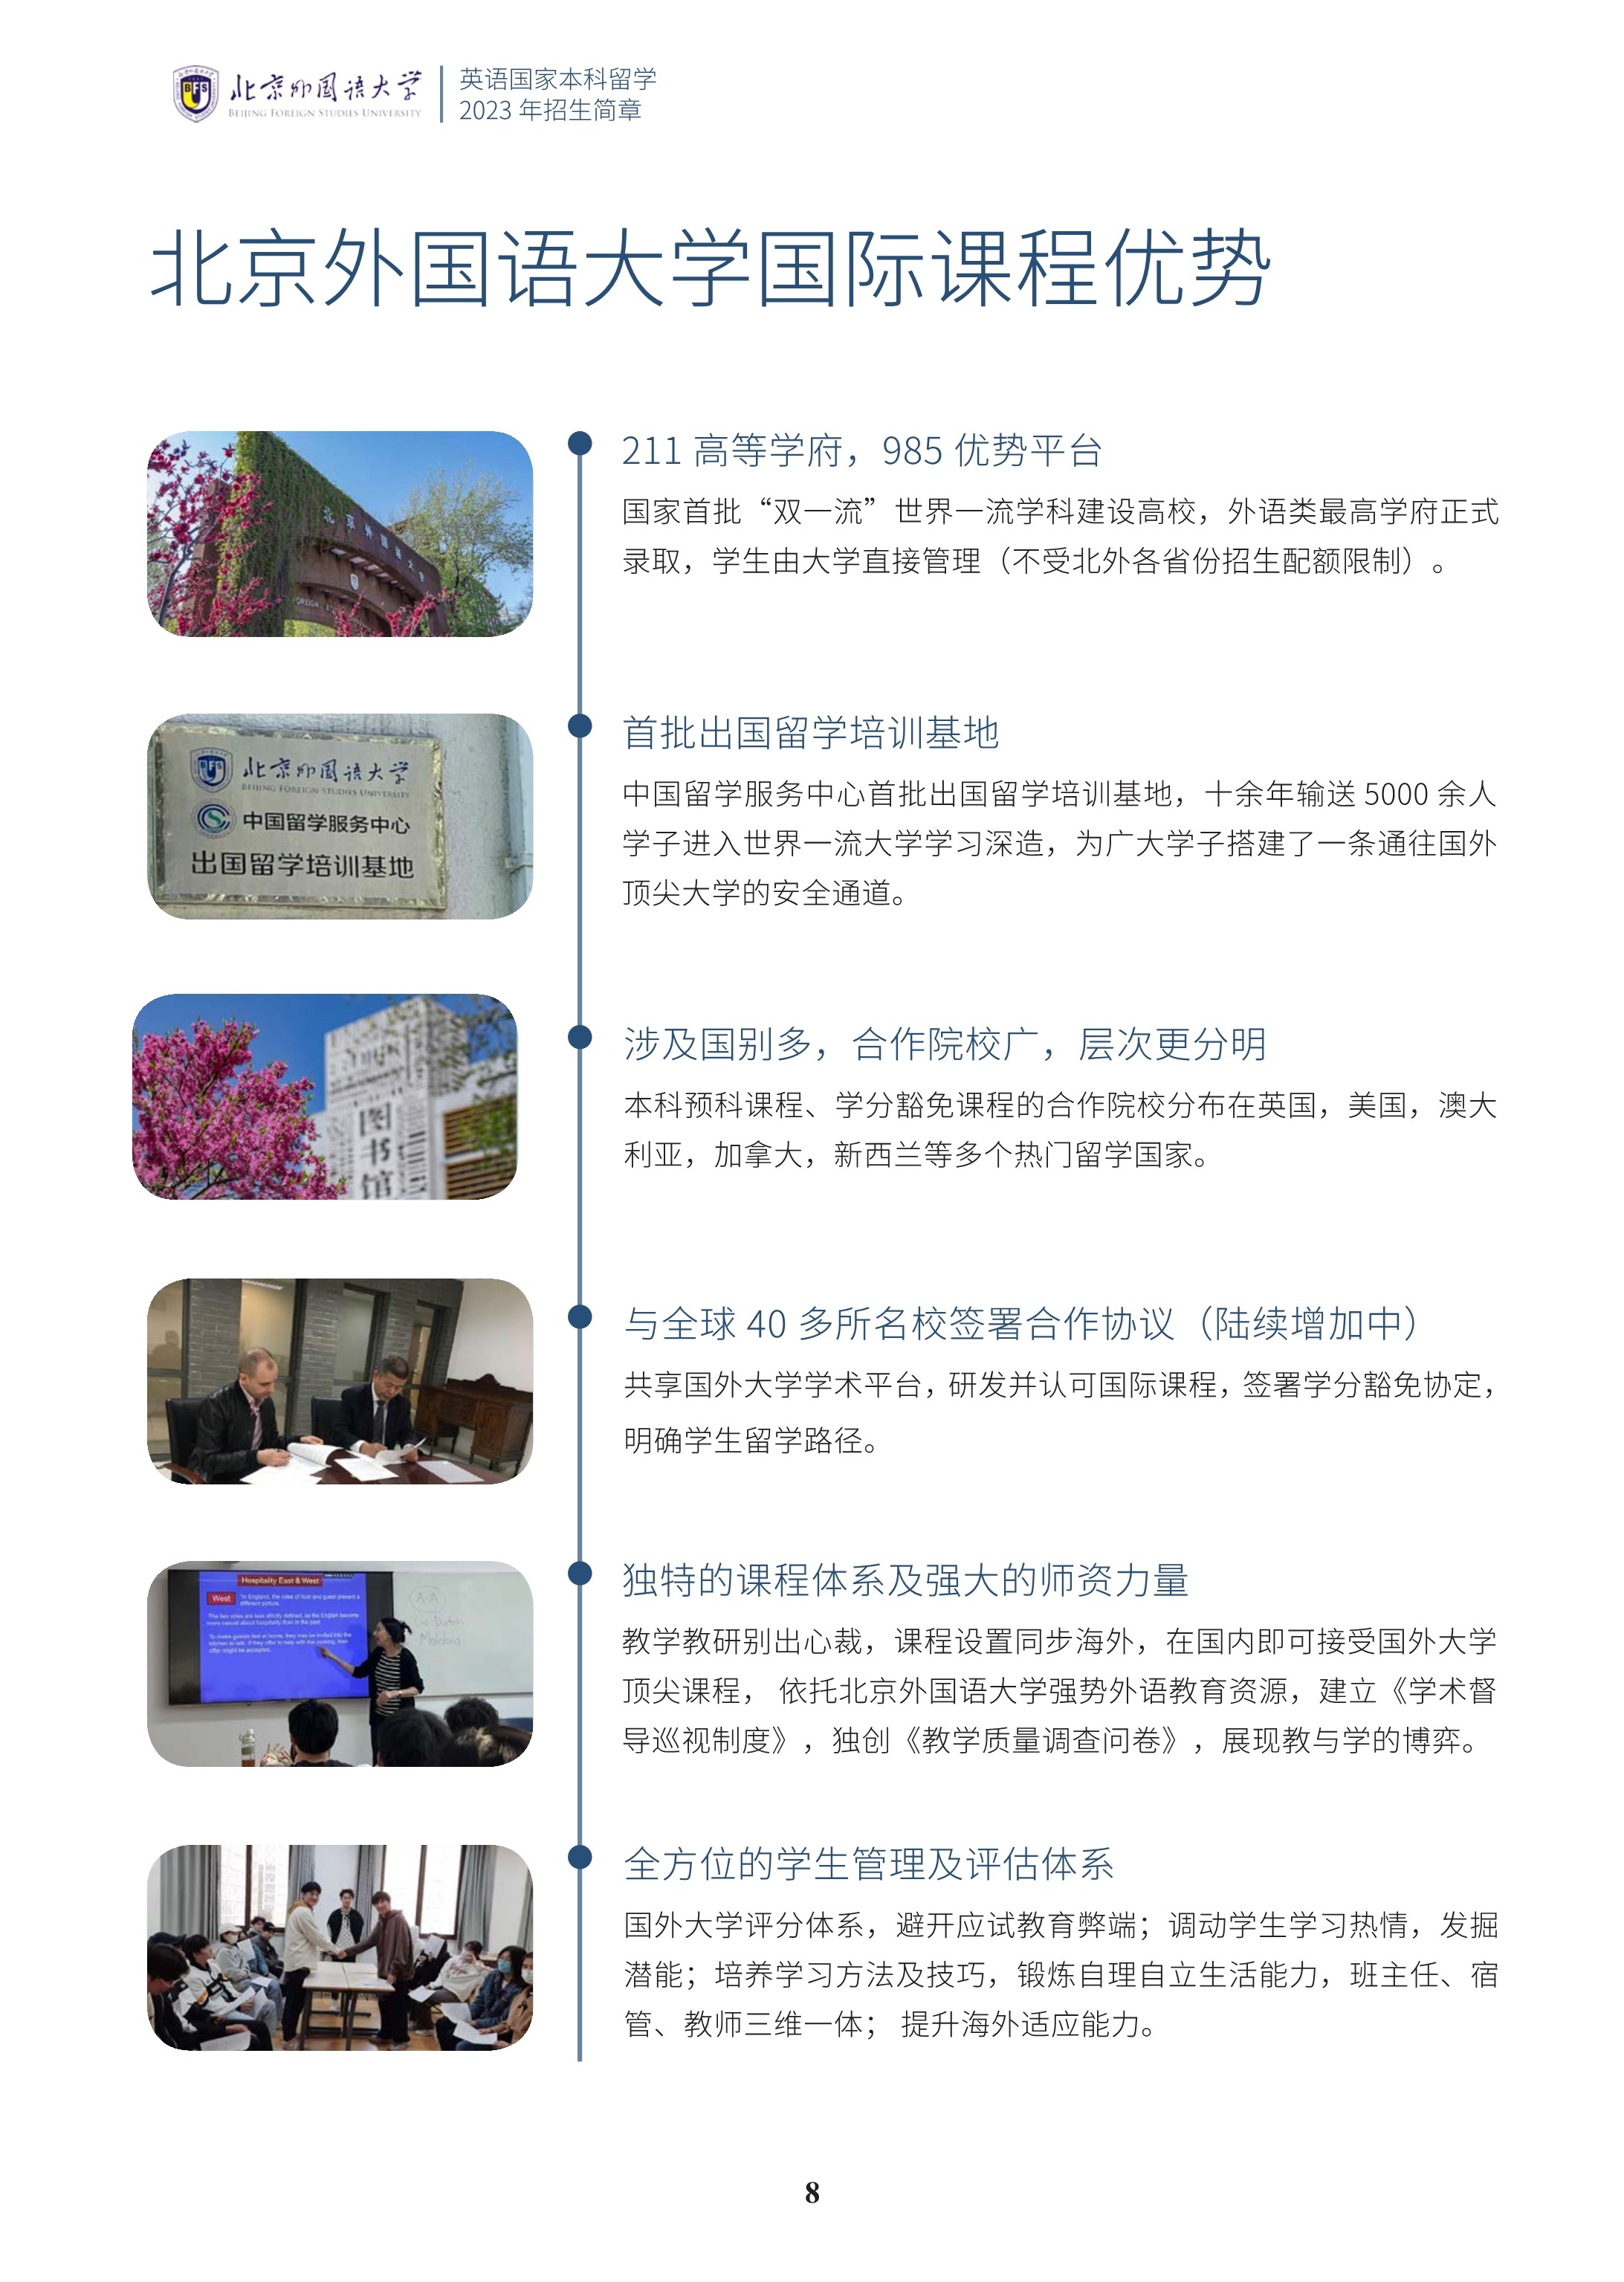 北京外国语大学1+3国际预科招生简章_9.jpg